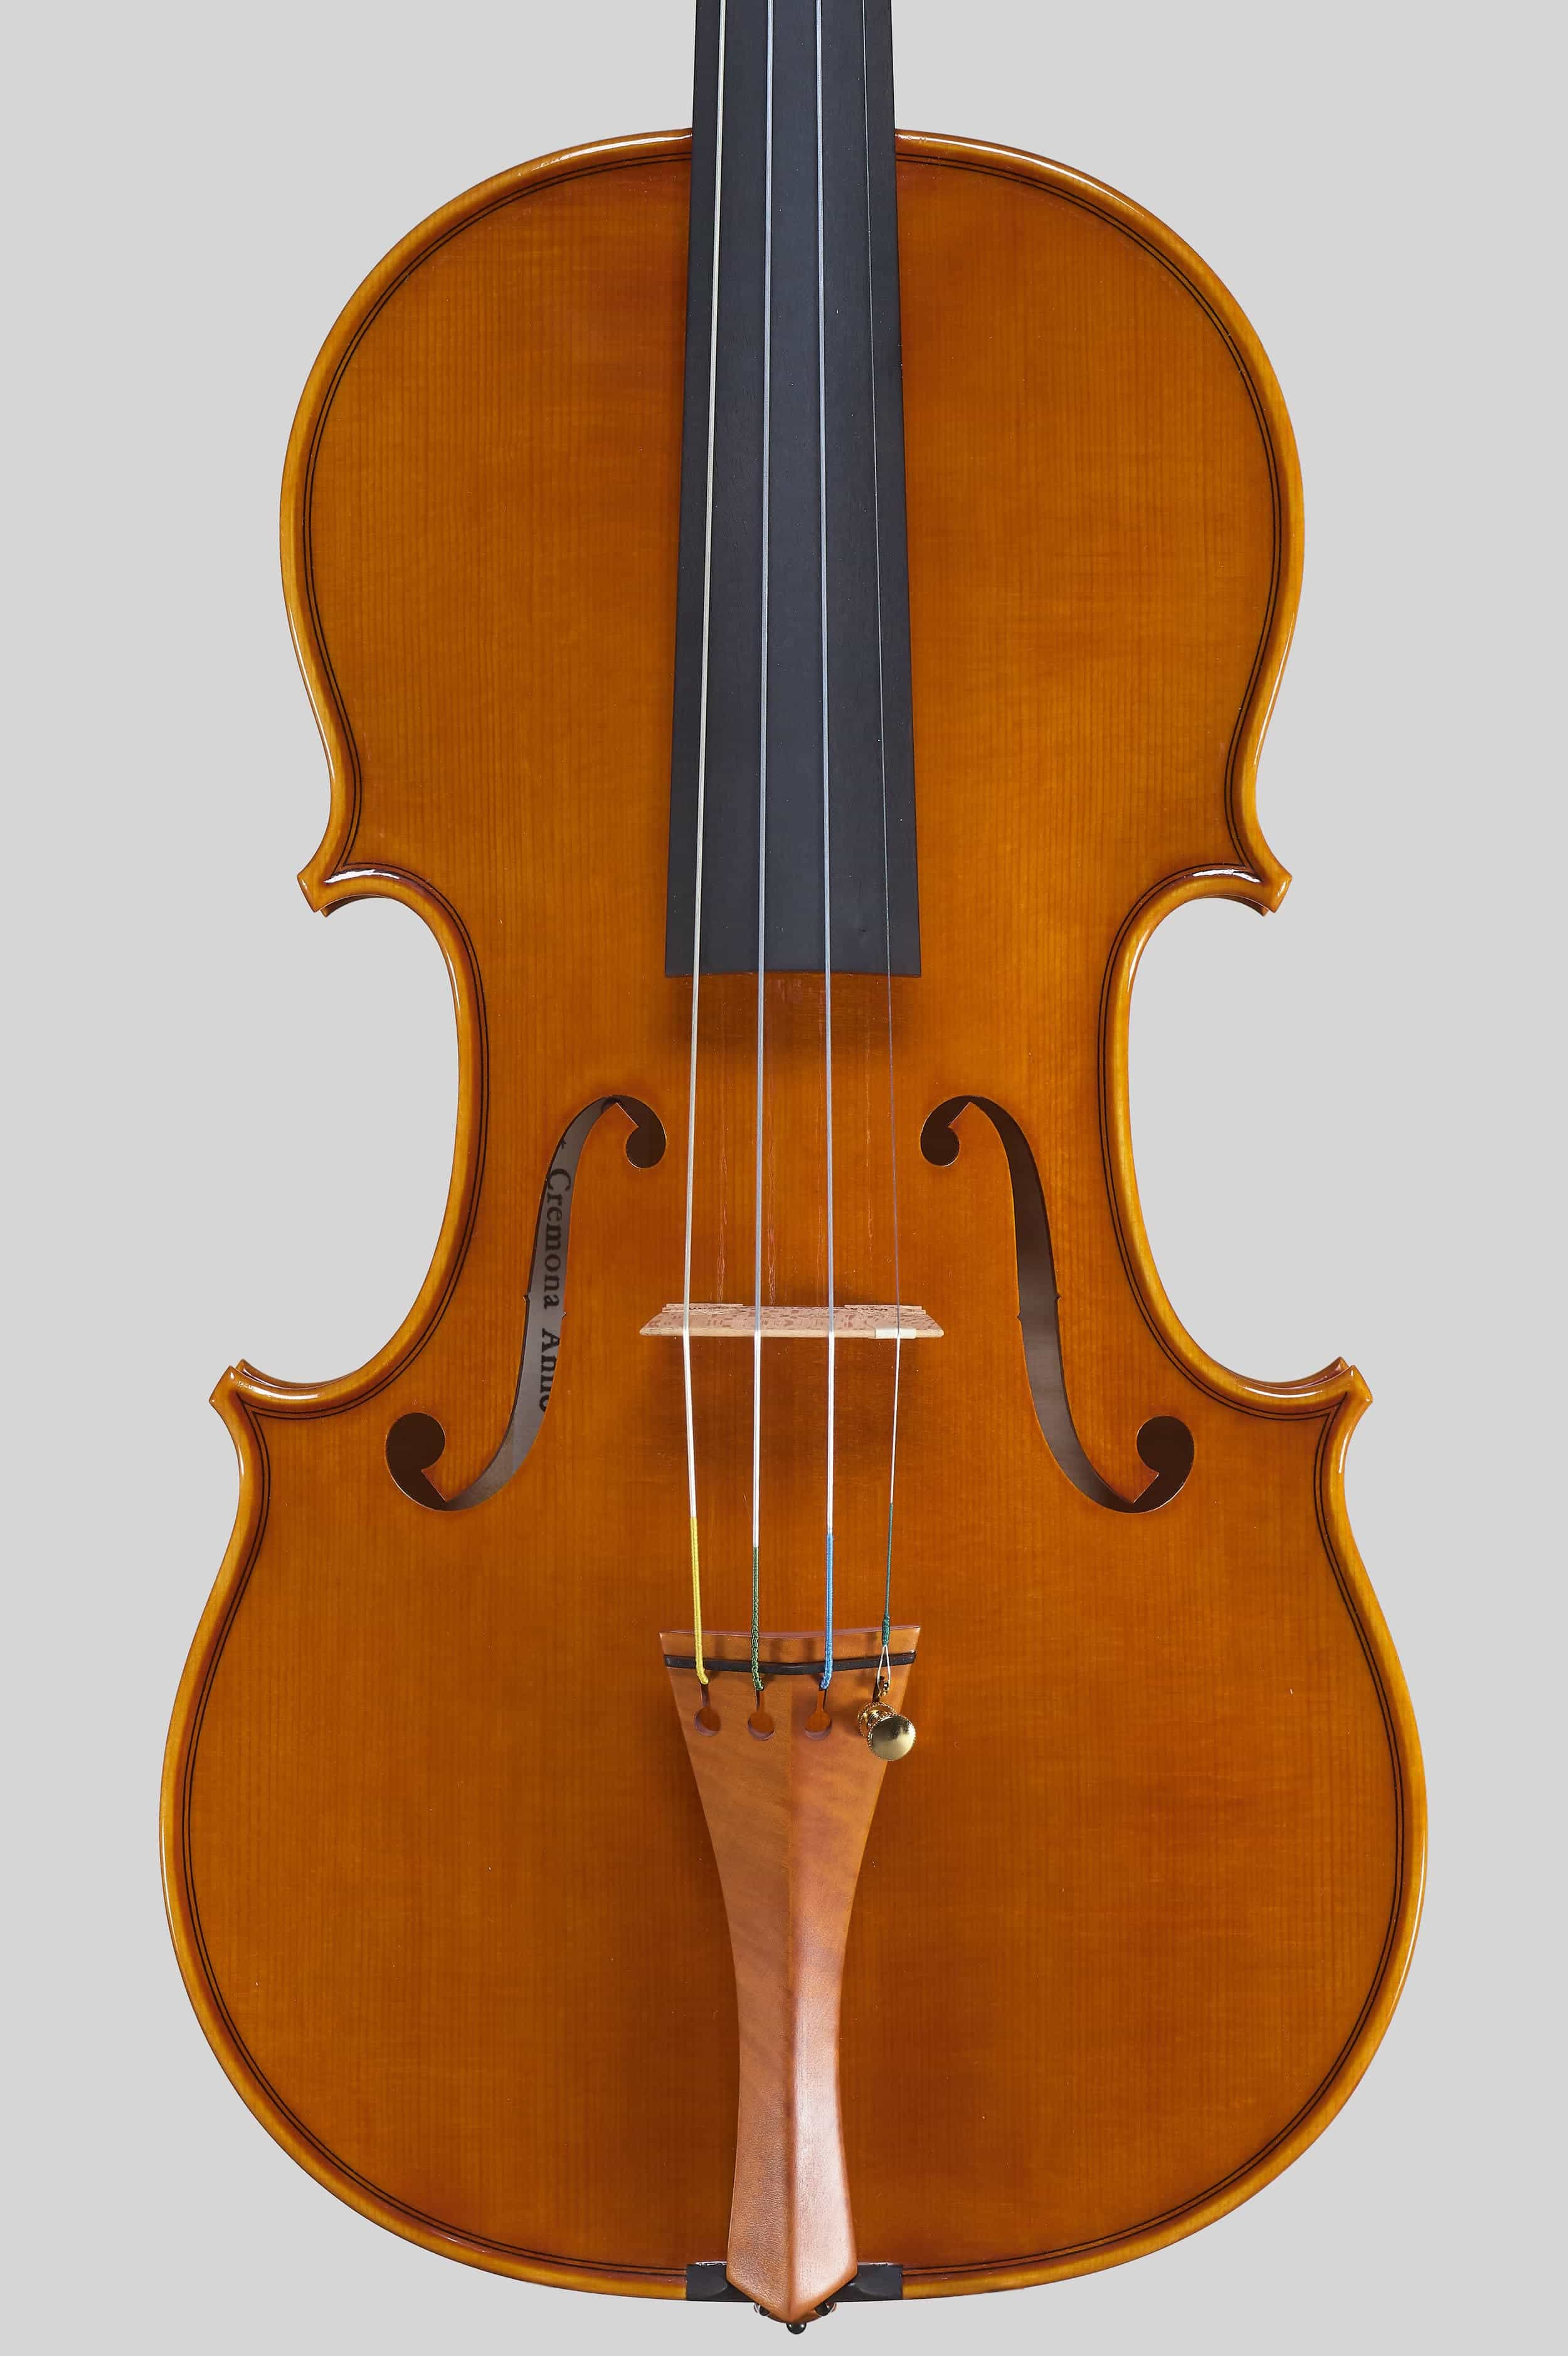 Anno 2017 - Violino modello stile A. Stradivari “Viotti” 1709 - Tavola